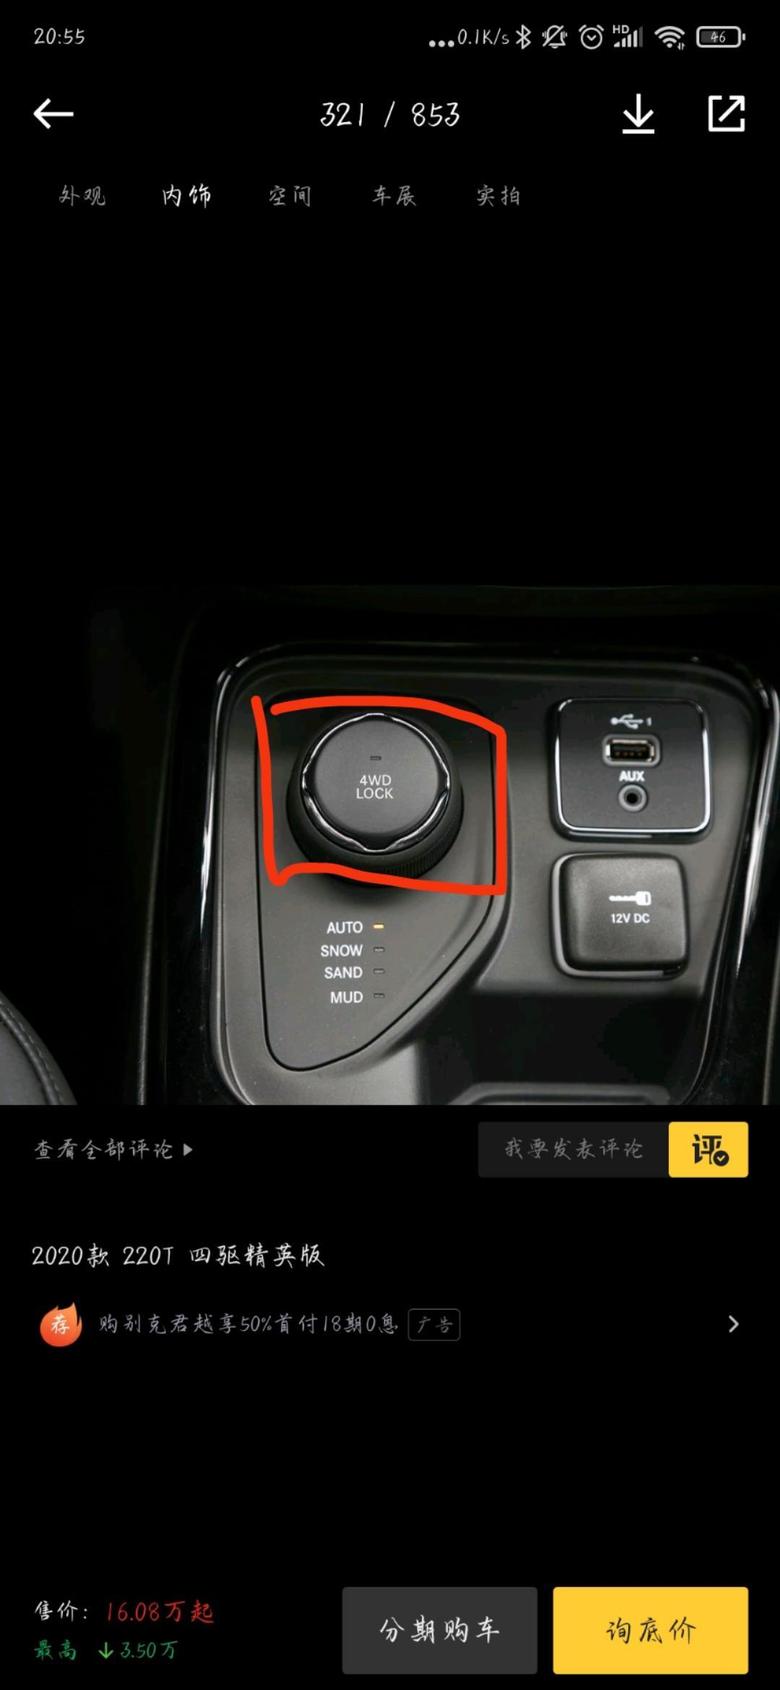 指南者 这个红色圈住的按钮具体功能，谁可以详细解释下吗？它能够让车子处于全时四驱状态吗？